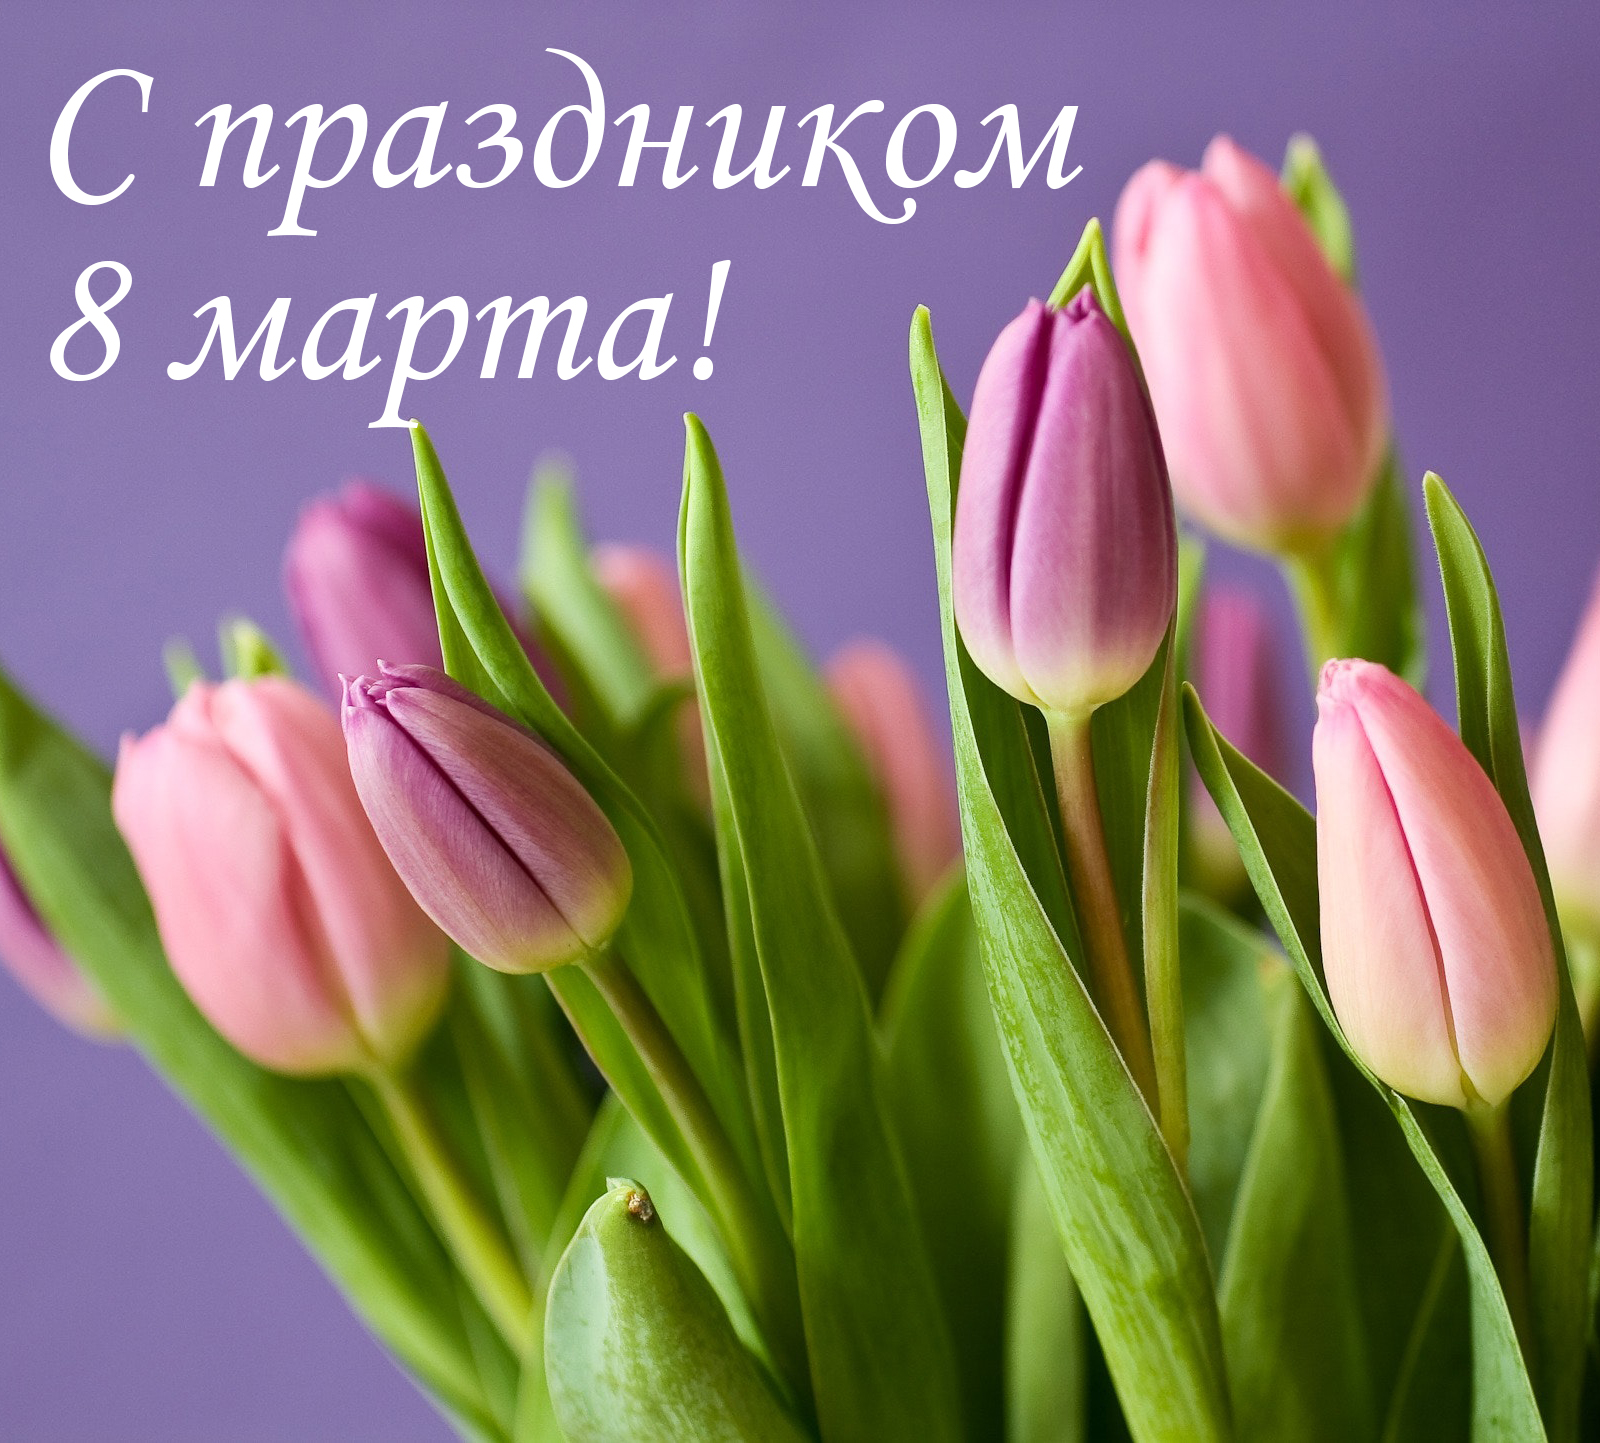 Примите поздравления С 8 марта!